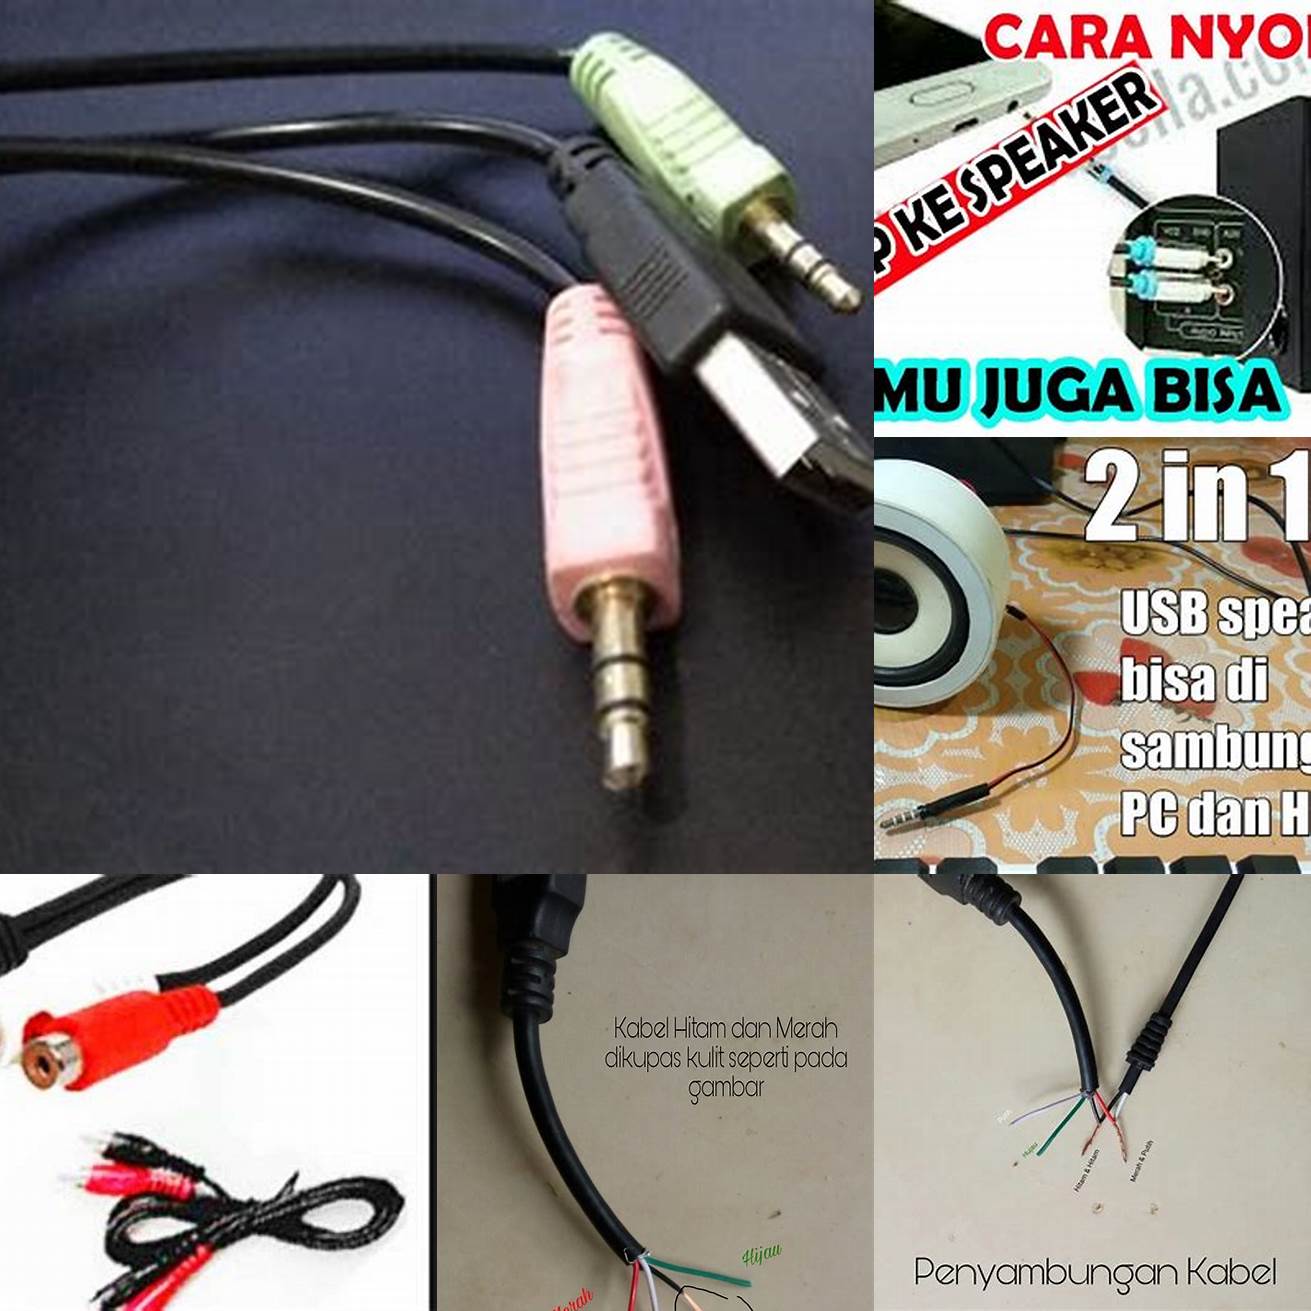 1 Sambungkan kabel power ke speaker dan colokkan kabel USB ke adaptor atau komputer